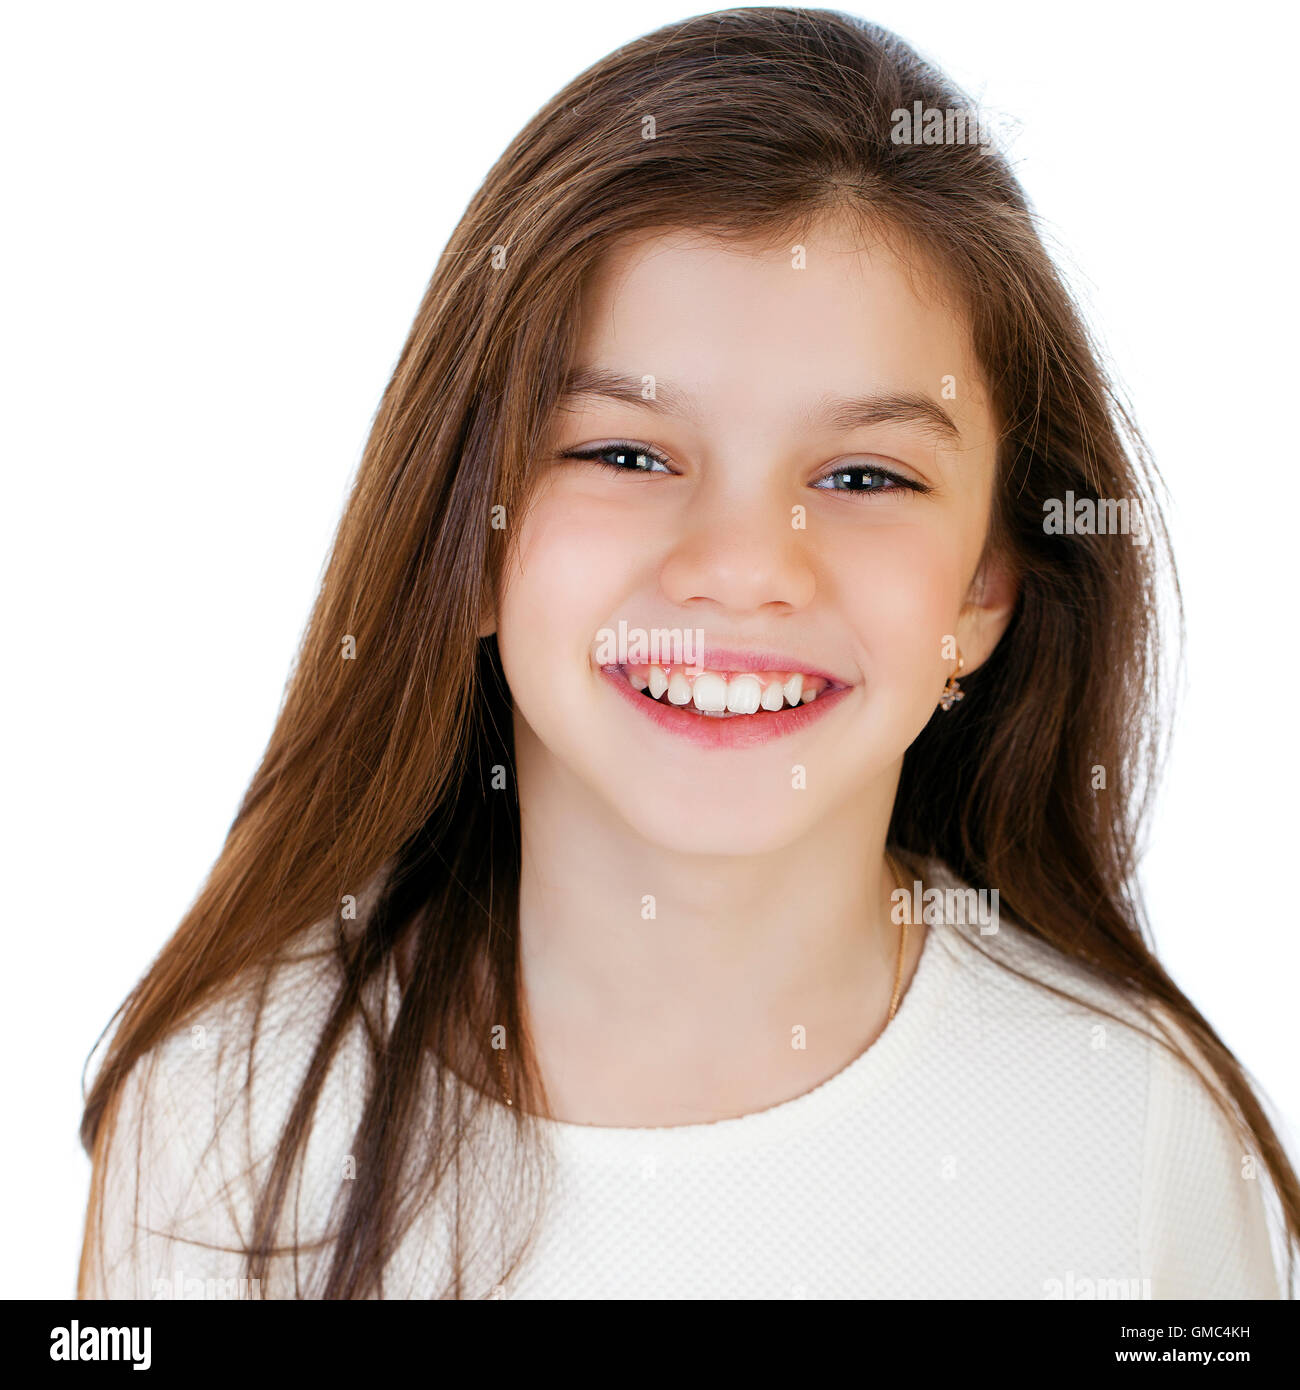 Porträt von einem charmanten kleinen Mädchen lächelnd in die Kamera, isoliert auf weißem Hintergrund Stockfoto